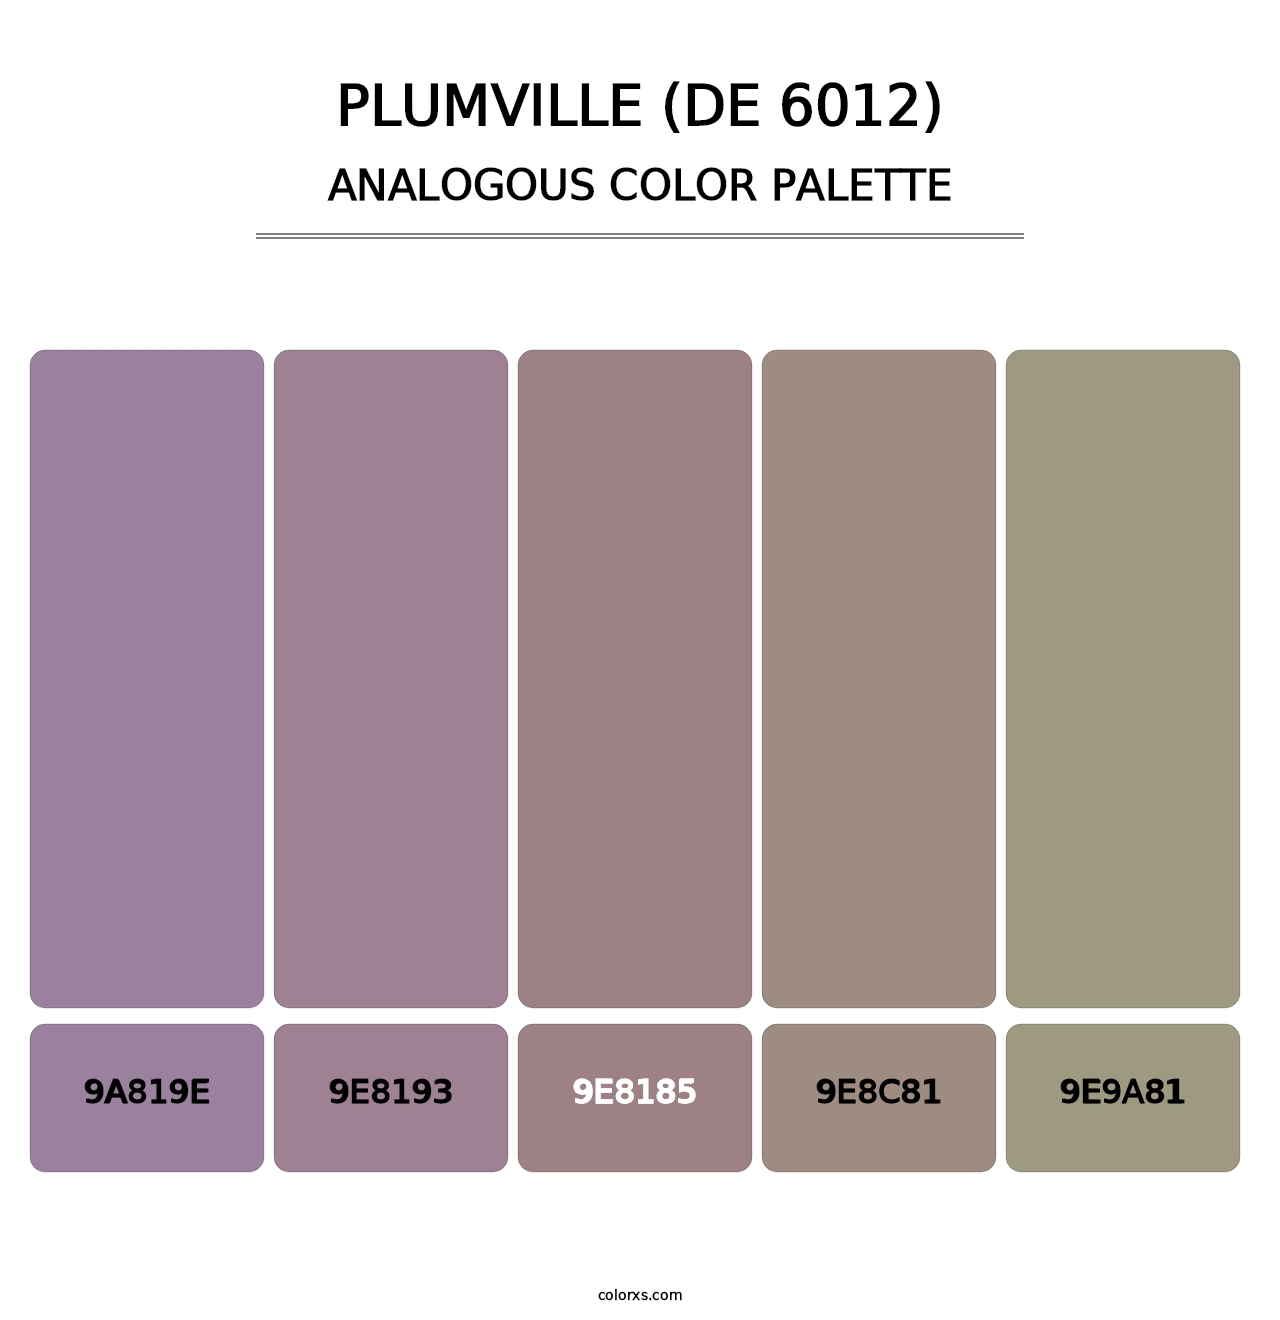 Plumville (DE 6012) - Analogous Color Palette